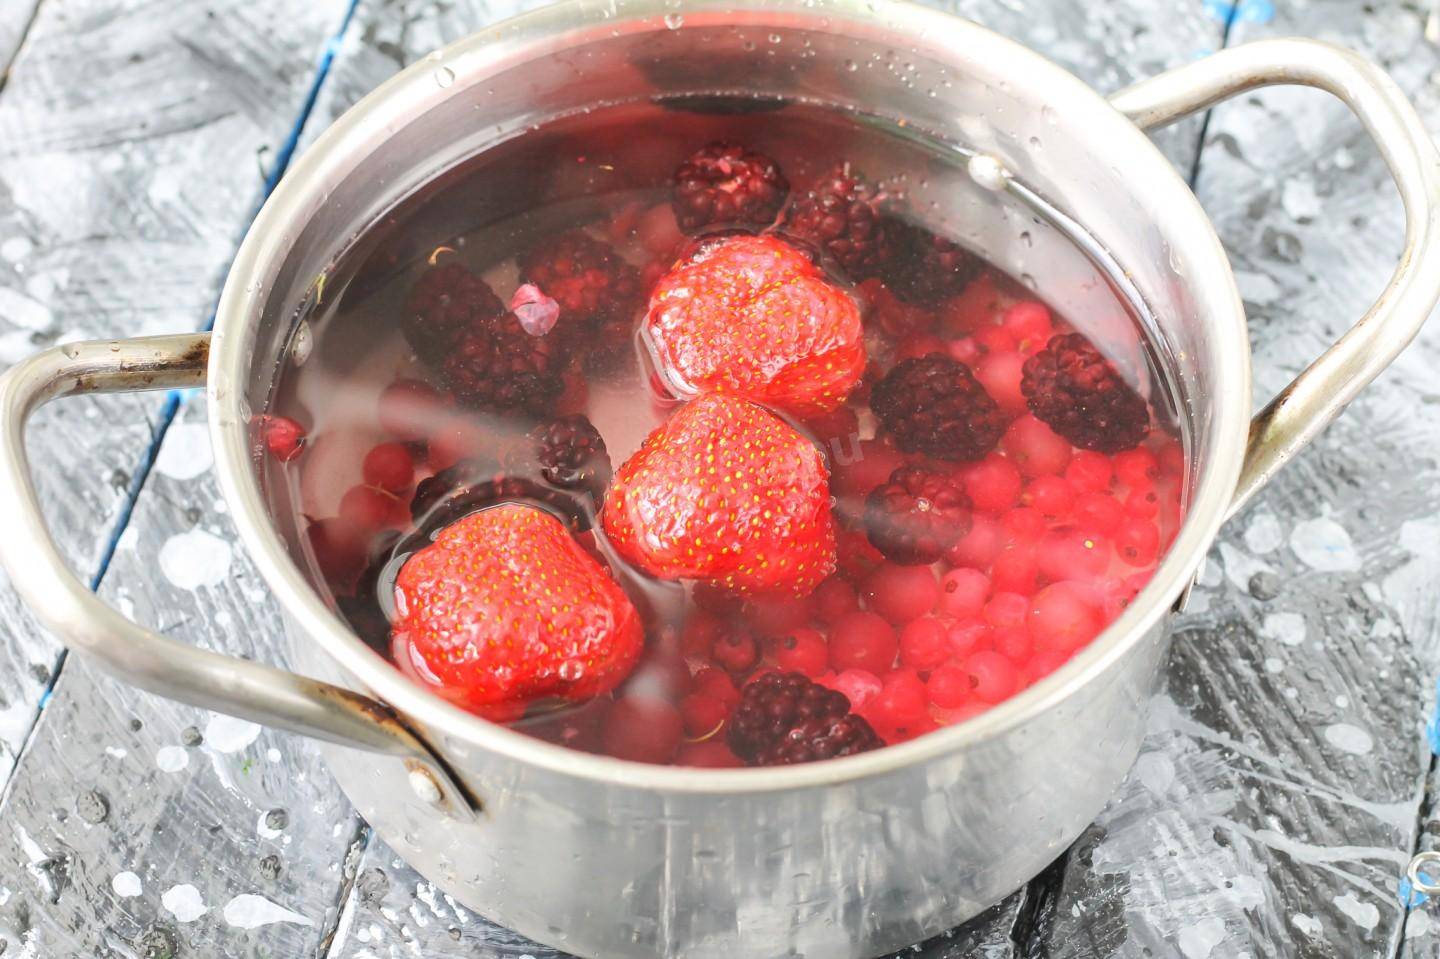 21 рецепт блюд и напитков из замороженной вишни, приготовление, советы, польза ягоды и рекомендации по замораживанию (фото & видео) +отзывы